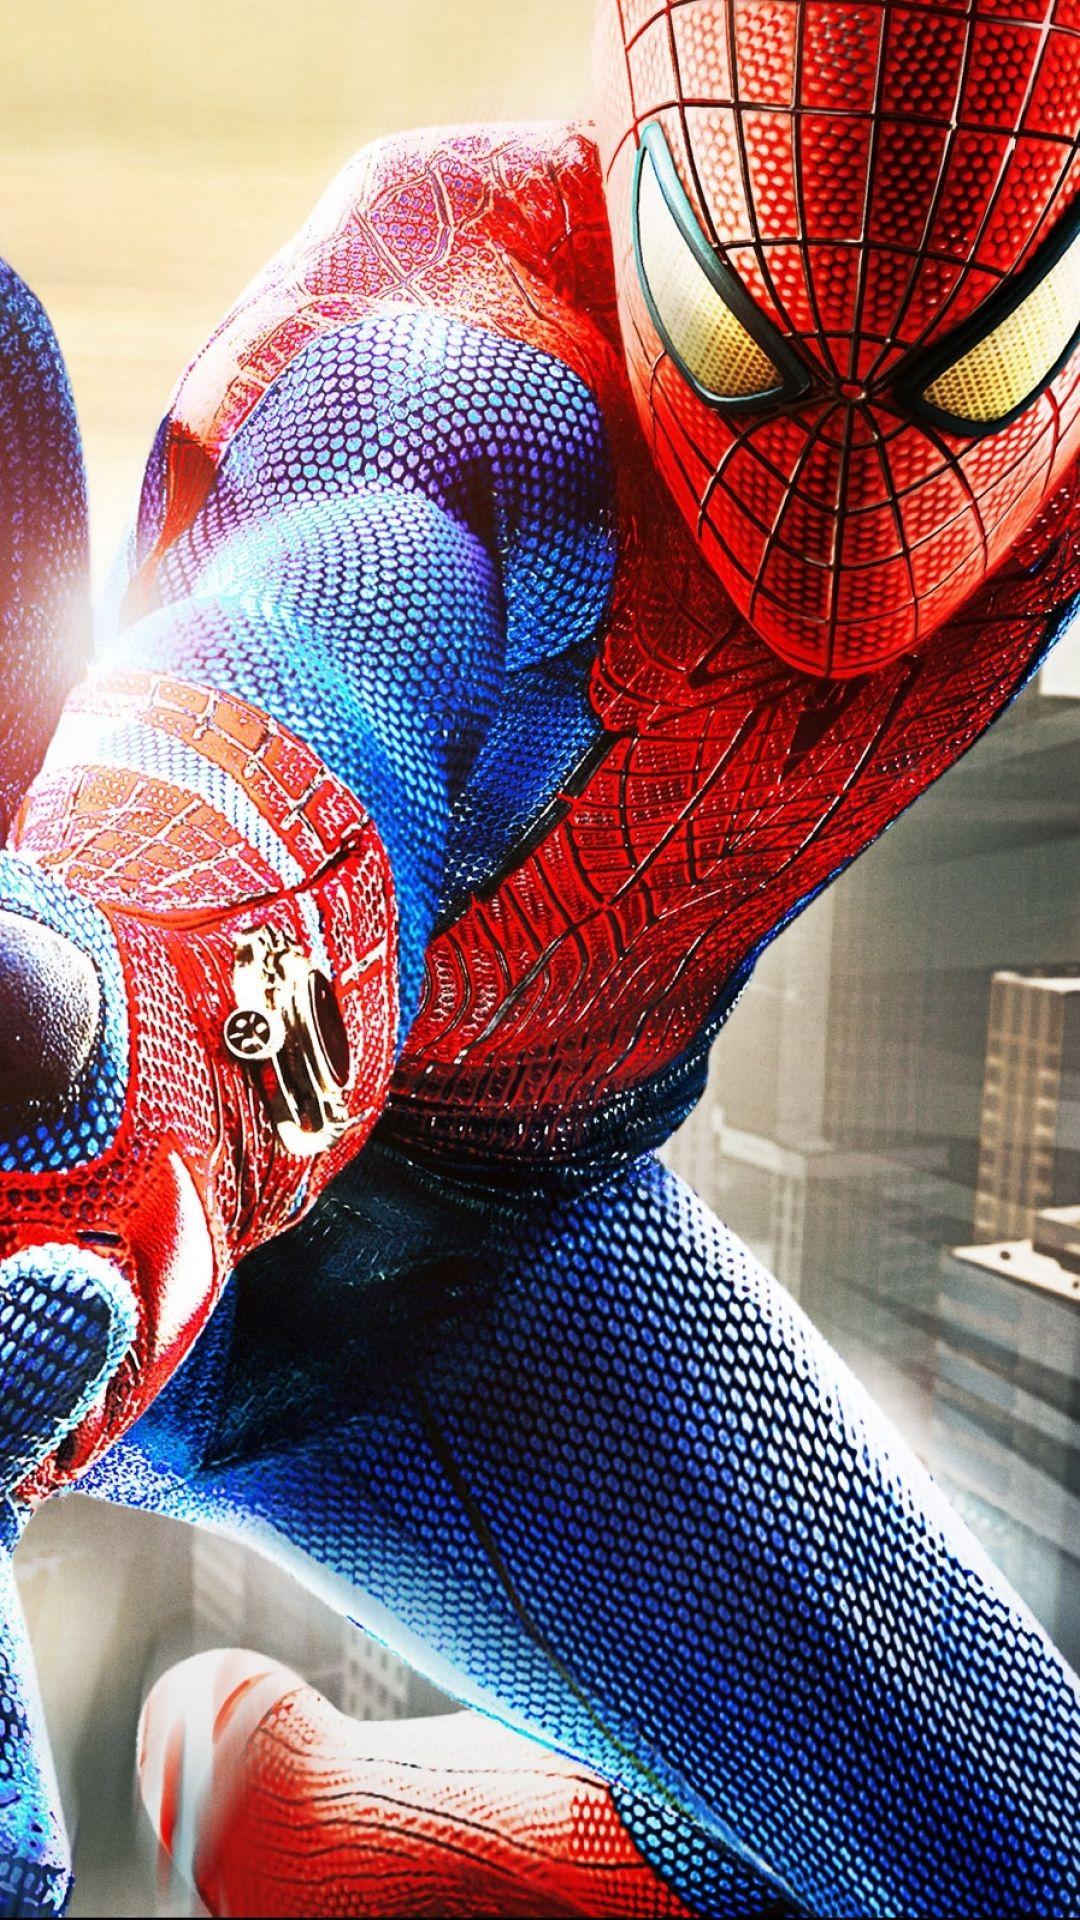 Spider-Man Mobile Wallpapers: Trang trí chiếc điện thoại của bạn với những hình nền di động Spider-Man đầy mạnh mẽ và vô cùng cuốn hút. Để bạn không chỉ cảm nhận được sức mạnh của anh chàng siêu anh hùng mà còn mang theo cảm giác sự lầm lì khi đang sử dụng.